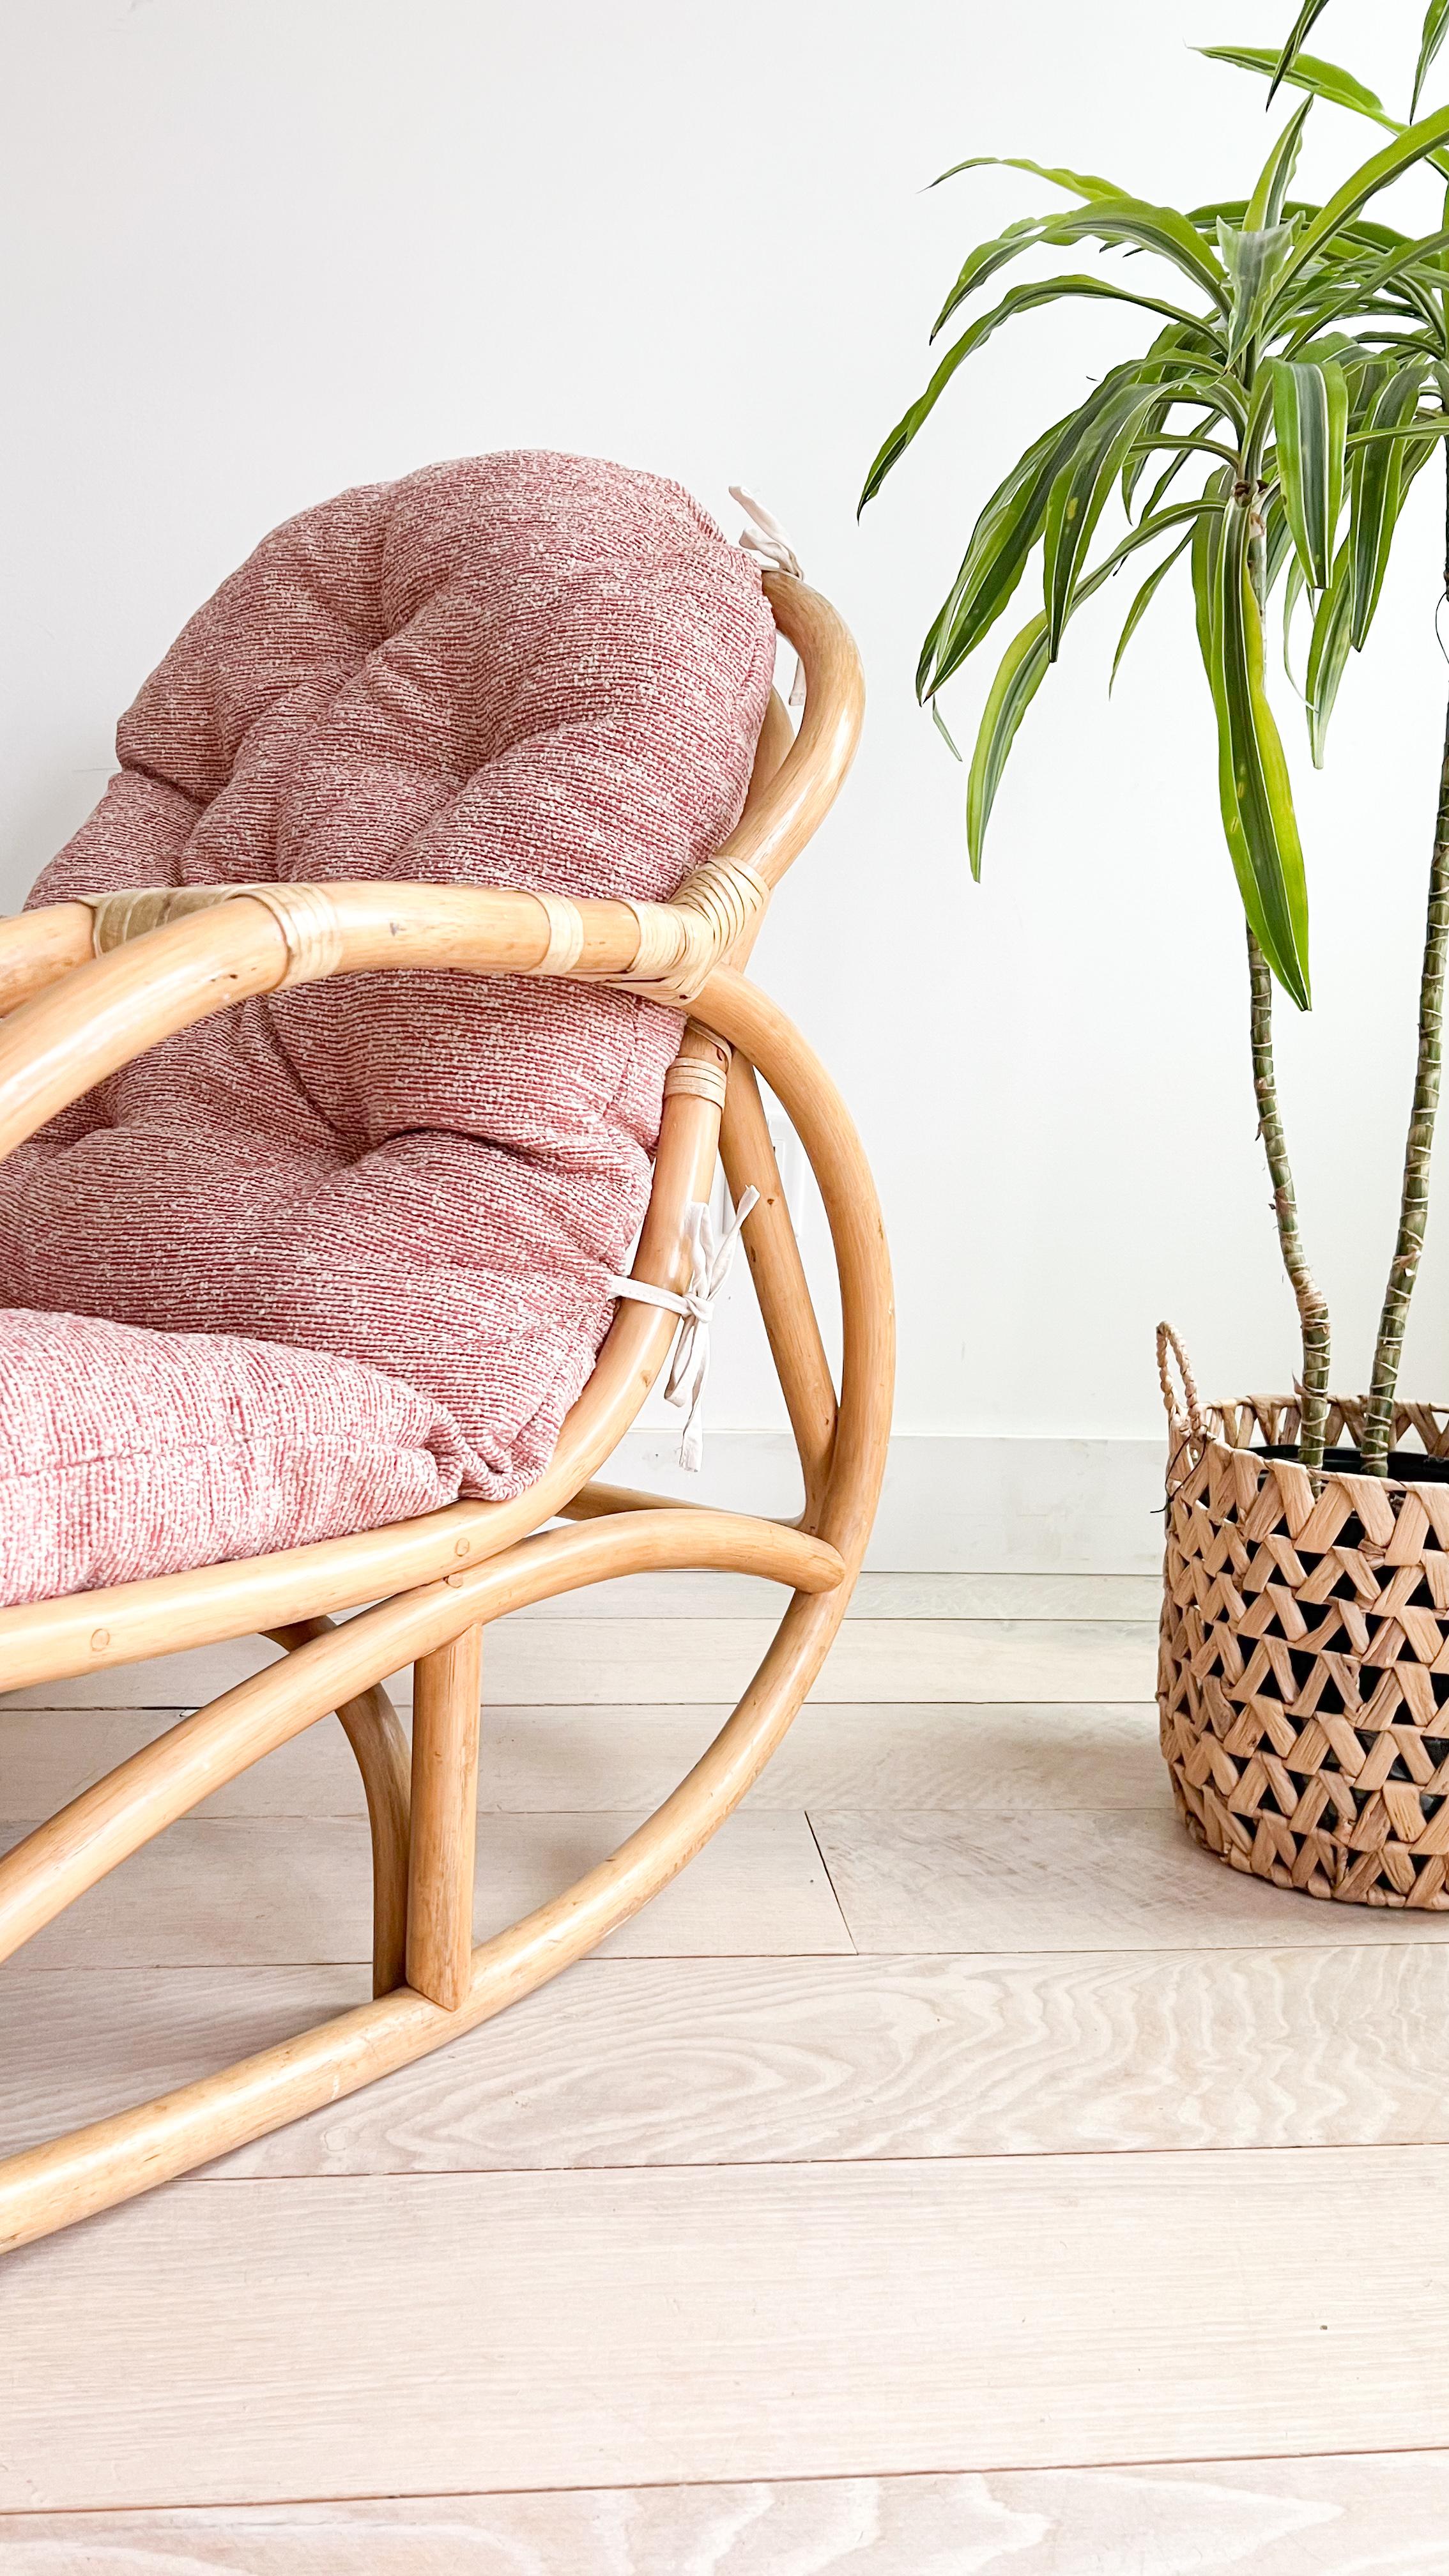 Verschönern Sie Ihren Raum mit dem zeitlosen Charme dieser reizvollen Rattan-Schaukelstühle, die von den ikonischen Designs von Viggo Boesen inspiriert sind. Mit ihrer frischen rosa und weißen Polsterung strahlen diese Stühle Wärme und Stil aus und